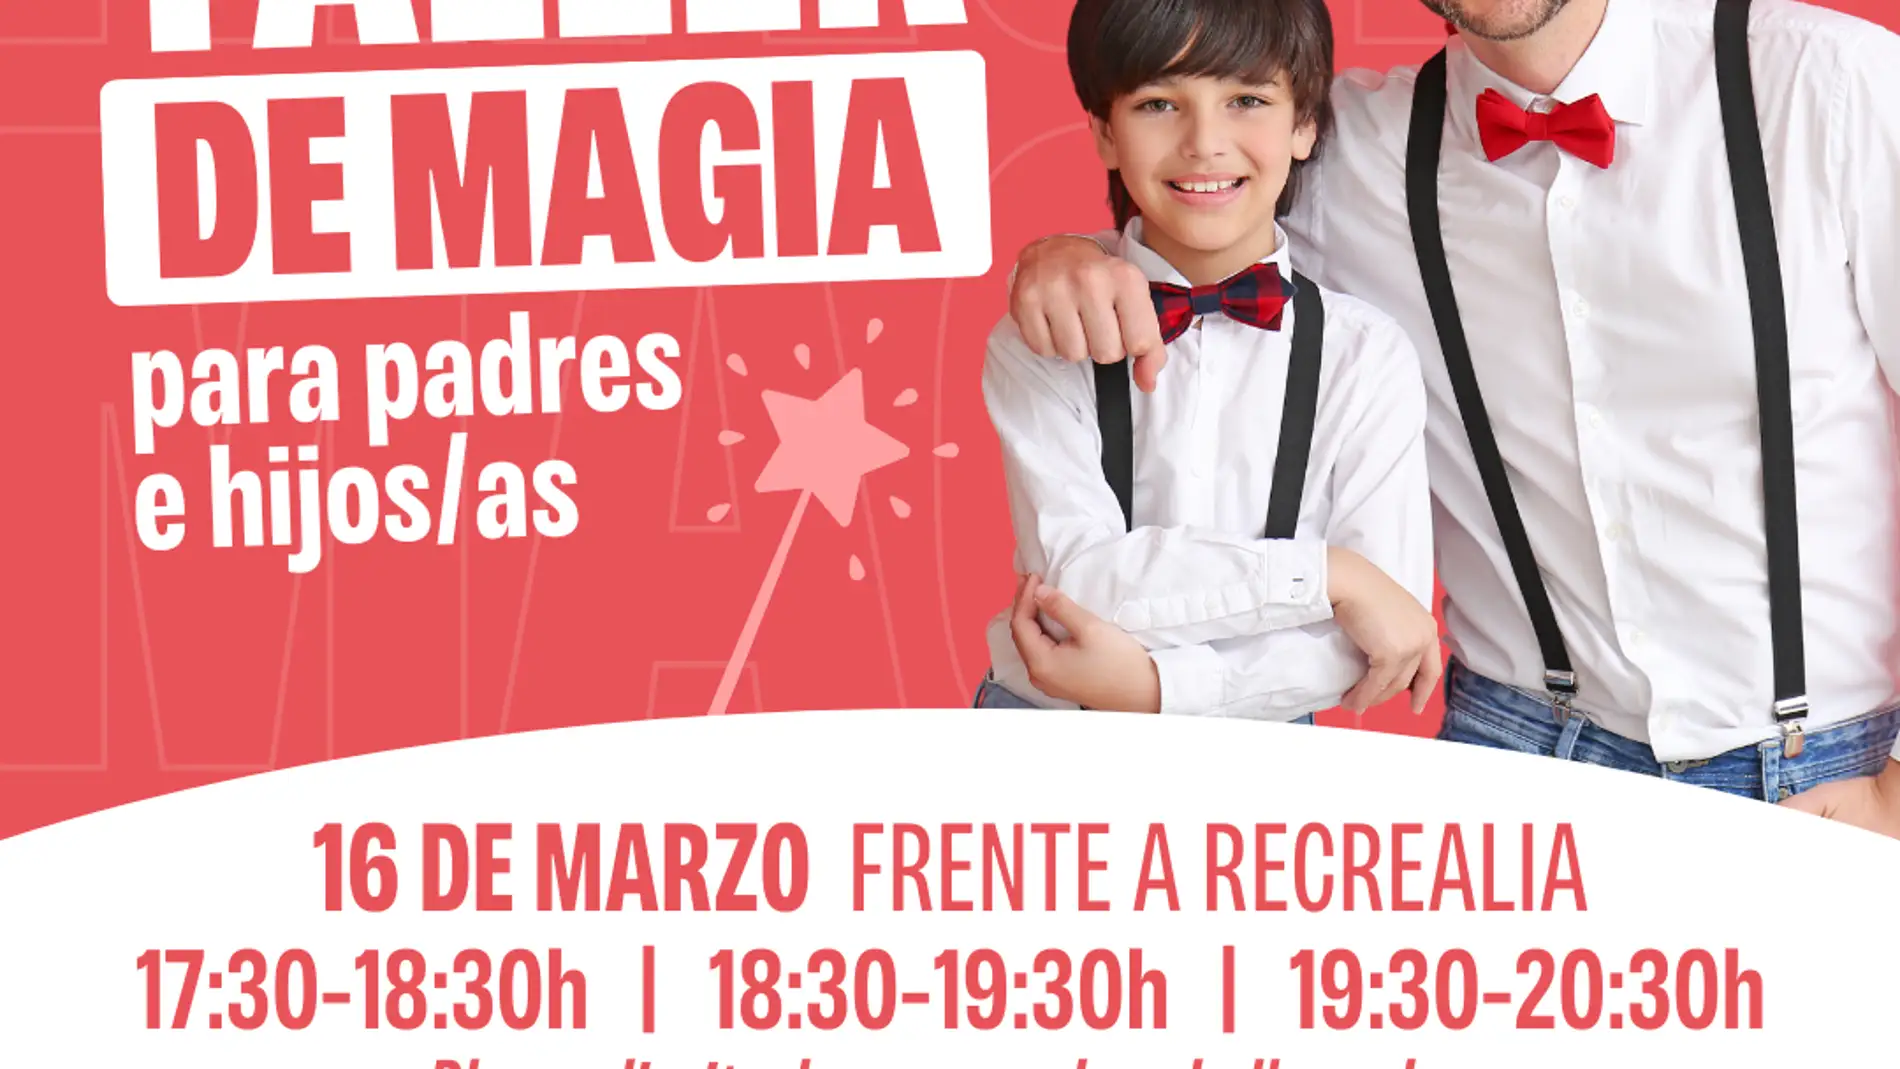 La magia de ser padre llega a Centro Comercial Vialia: Celebra el Día del Padre en su taller de magia para padres e hijos.